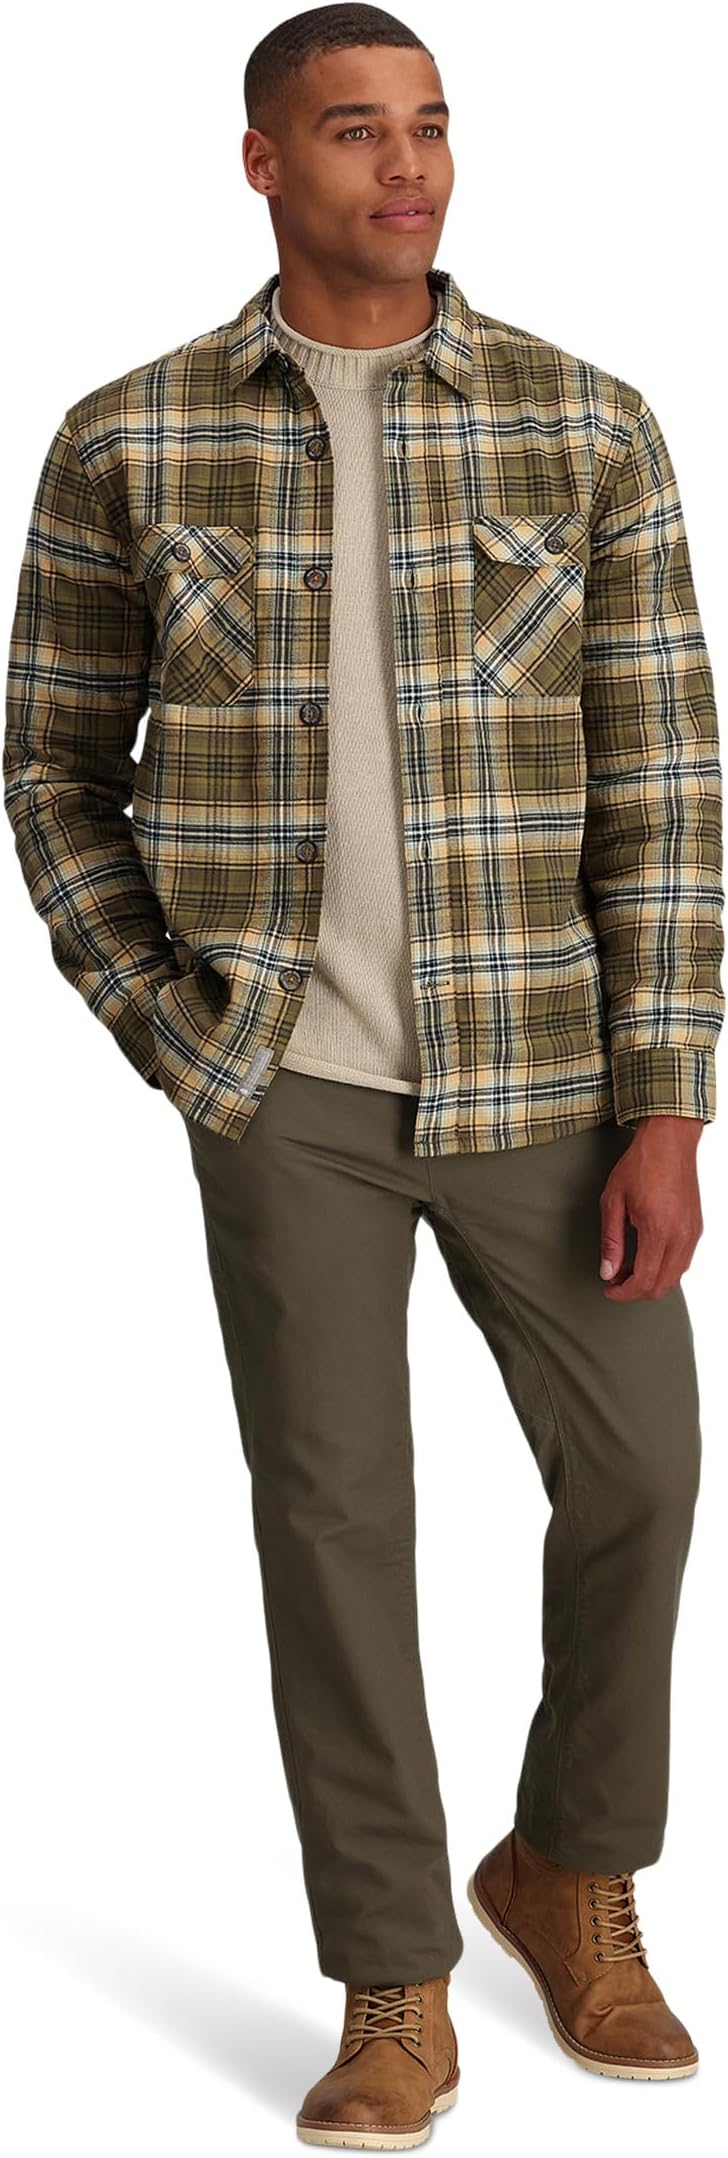 цена Куртка Snowcap Lined Flannel Long Sleeve Royal Robbins, цвет Dark Olive Rush Creek Plaid